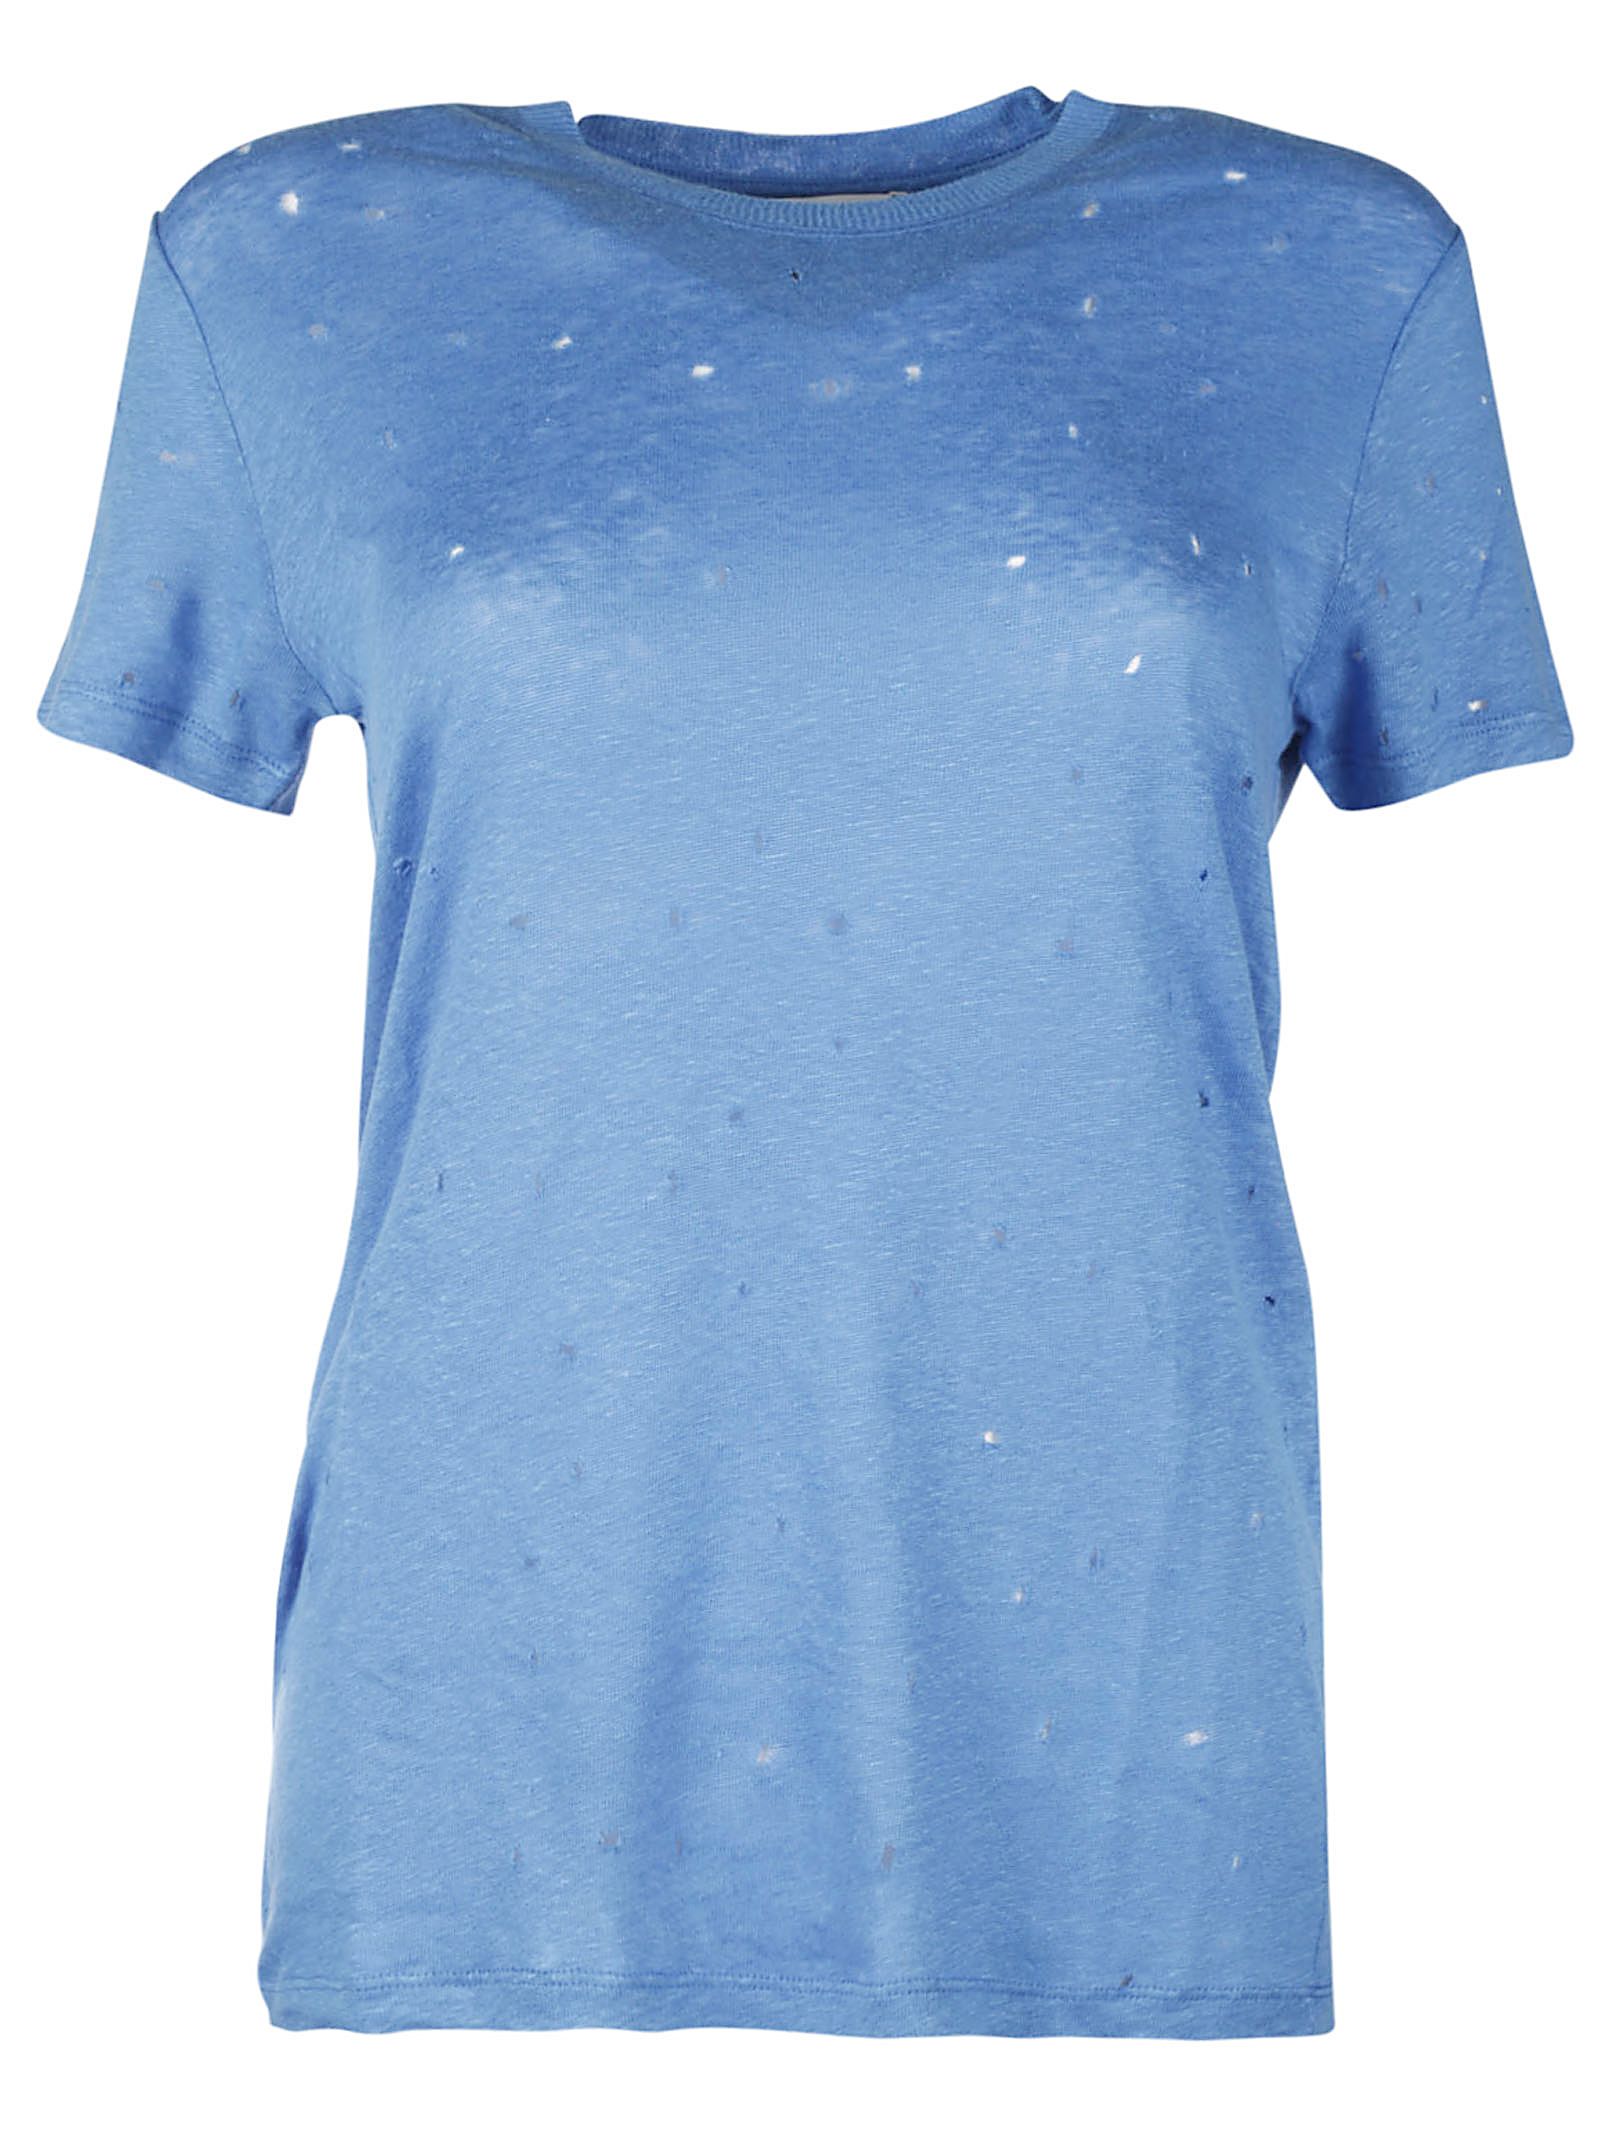 IRO - IRO Clay T-shirt - Blue, Women's Short Sleeve T-Shirts | Italist